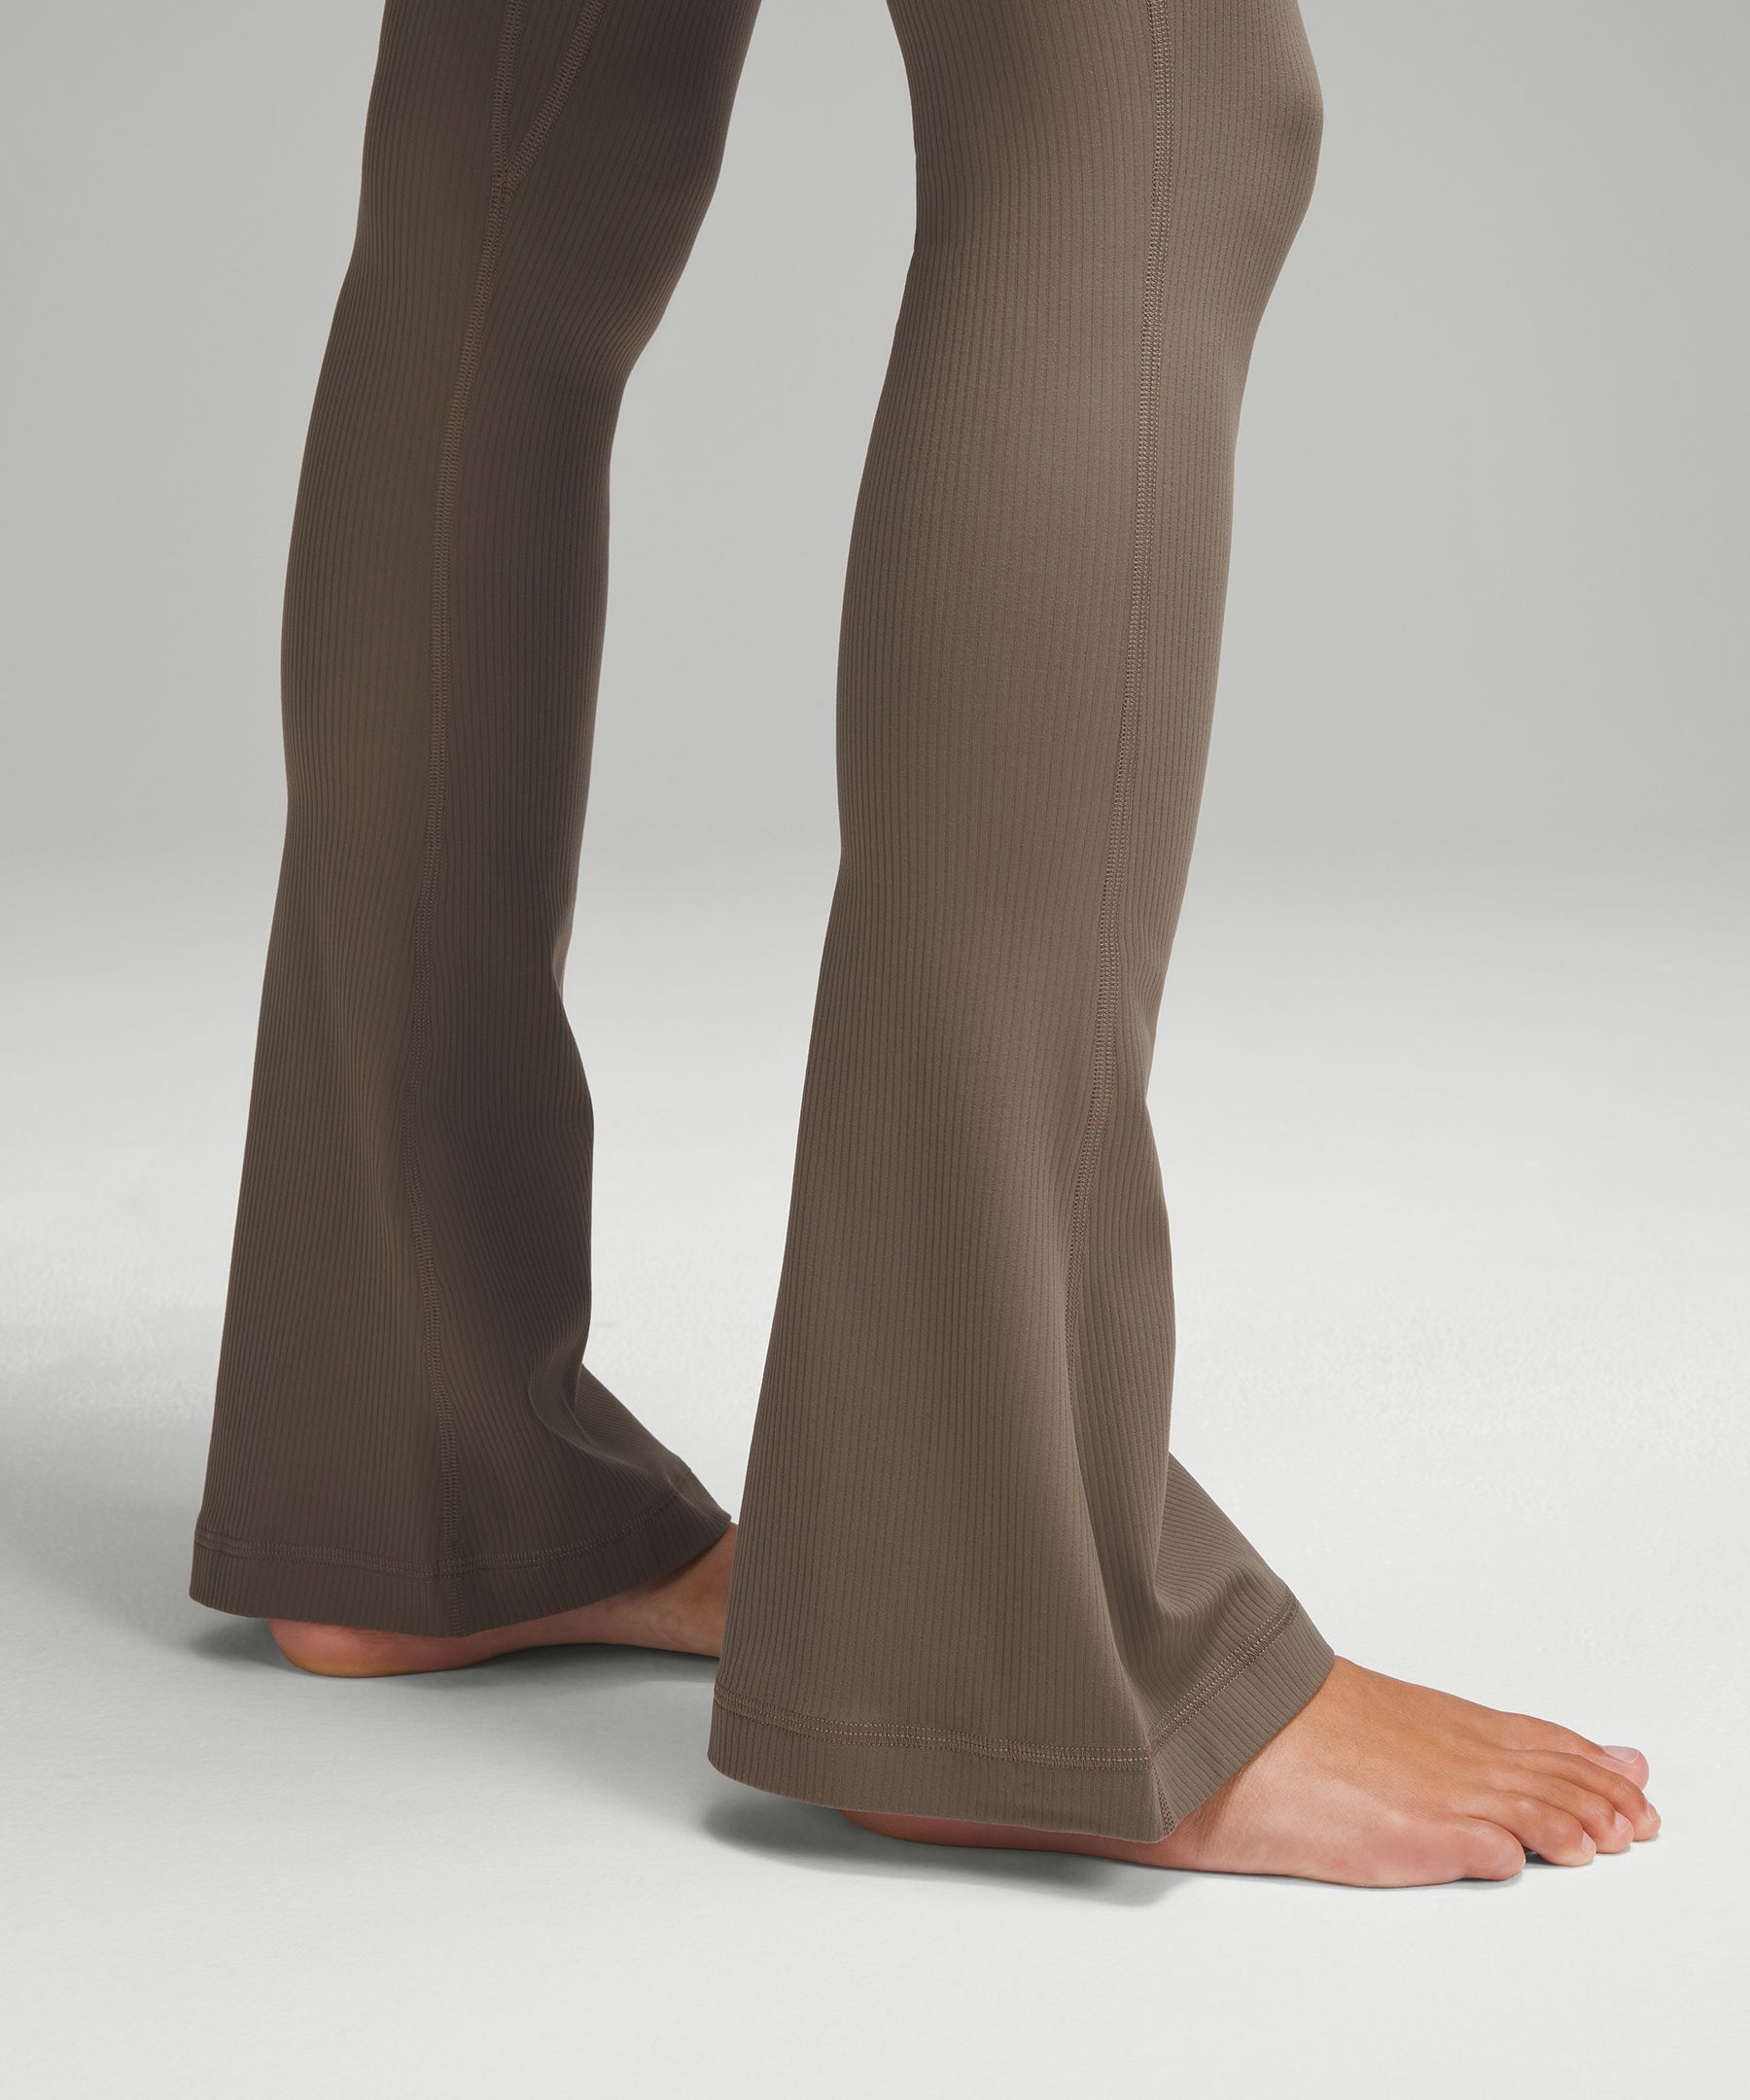 Shop Lululemon Align™ Ribbed Mini-flare Pants Extra Short